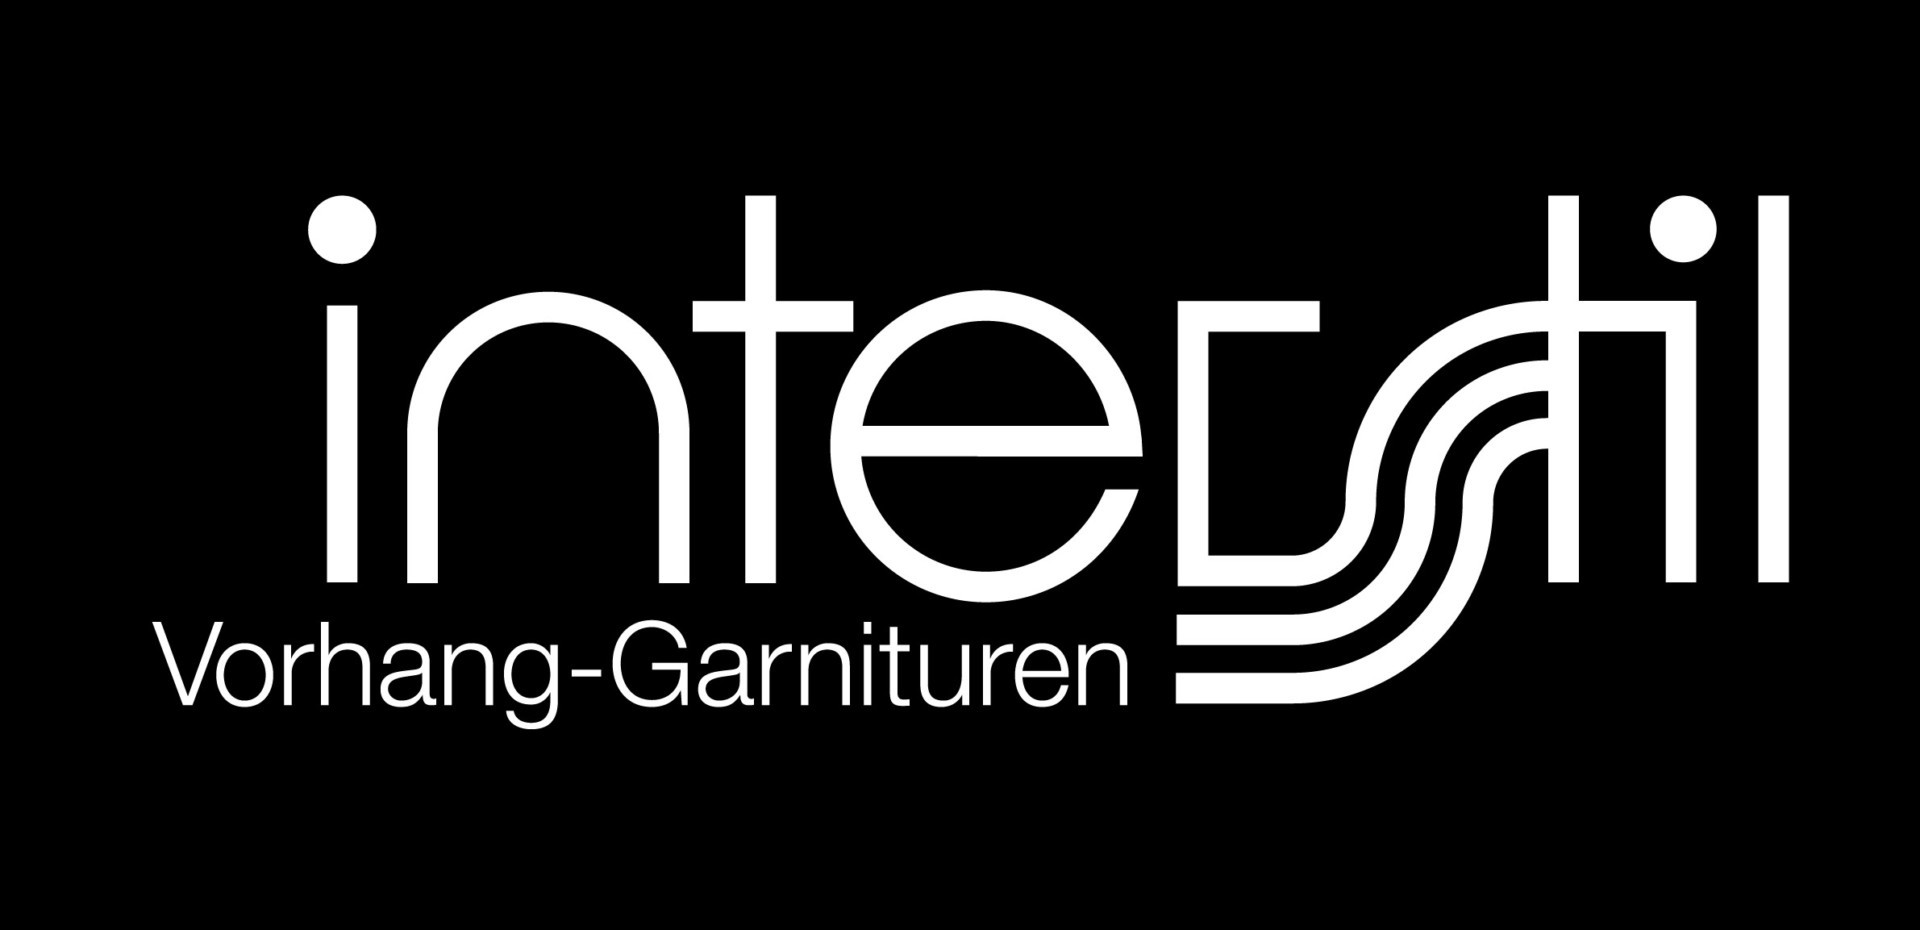 interstil-Logowit-zwart